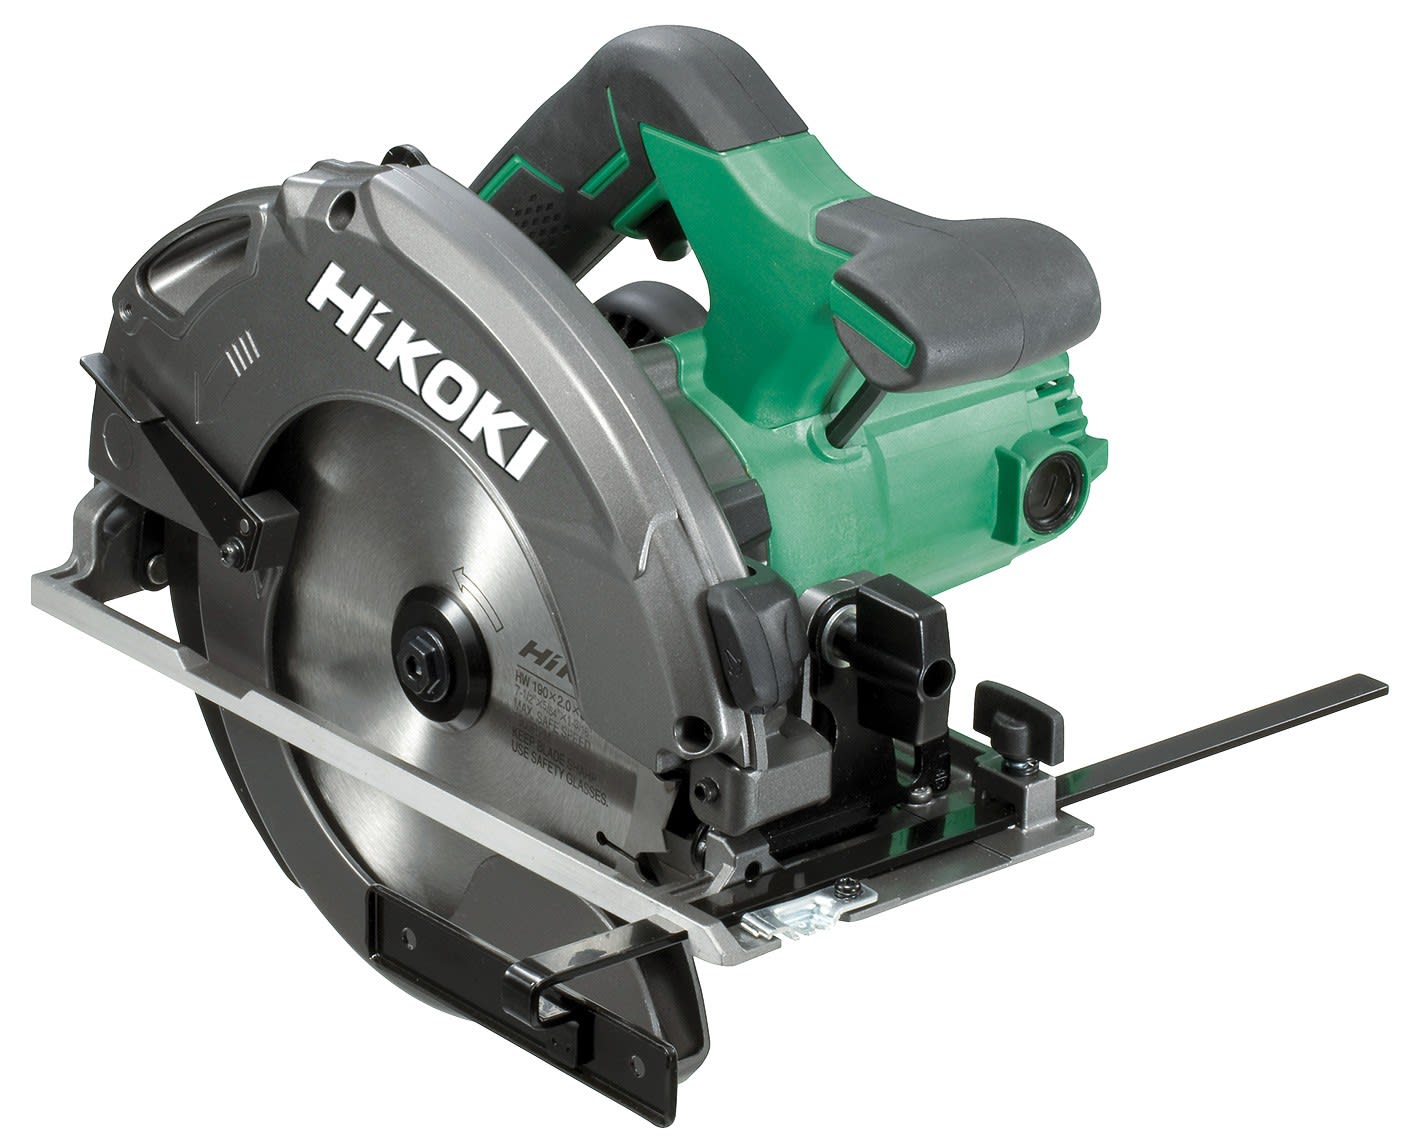 Hikoki Power Tools - Scie circulaire Ø190mm cap.66mm 1300W Vit à vide 5800tr/min frein moteur HitCase